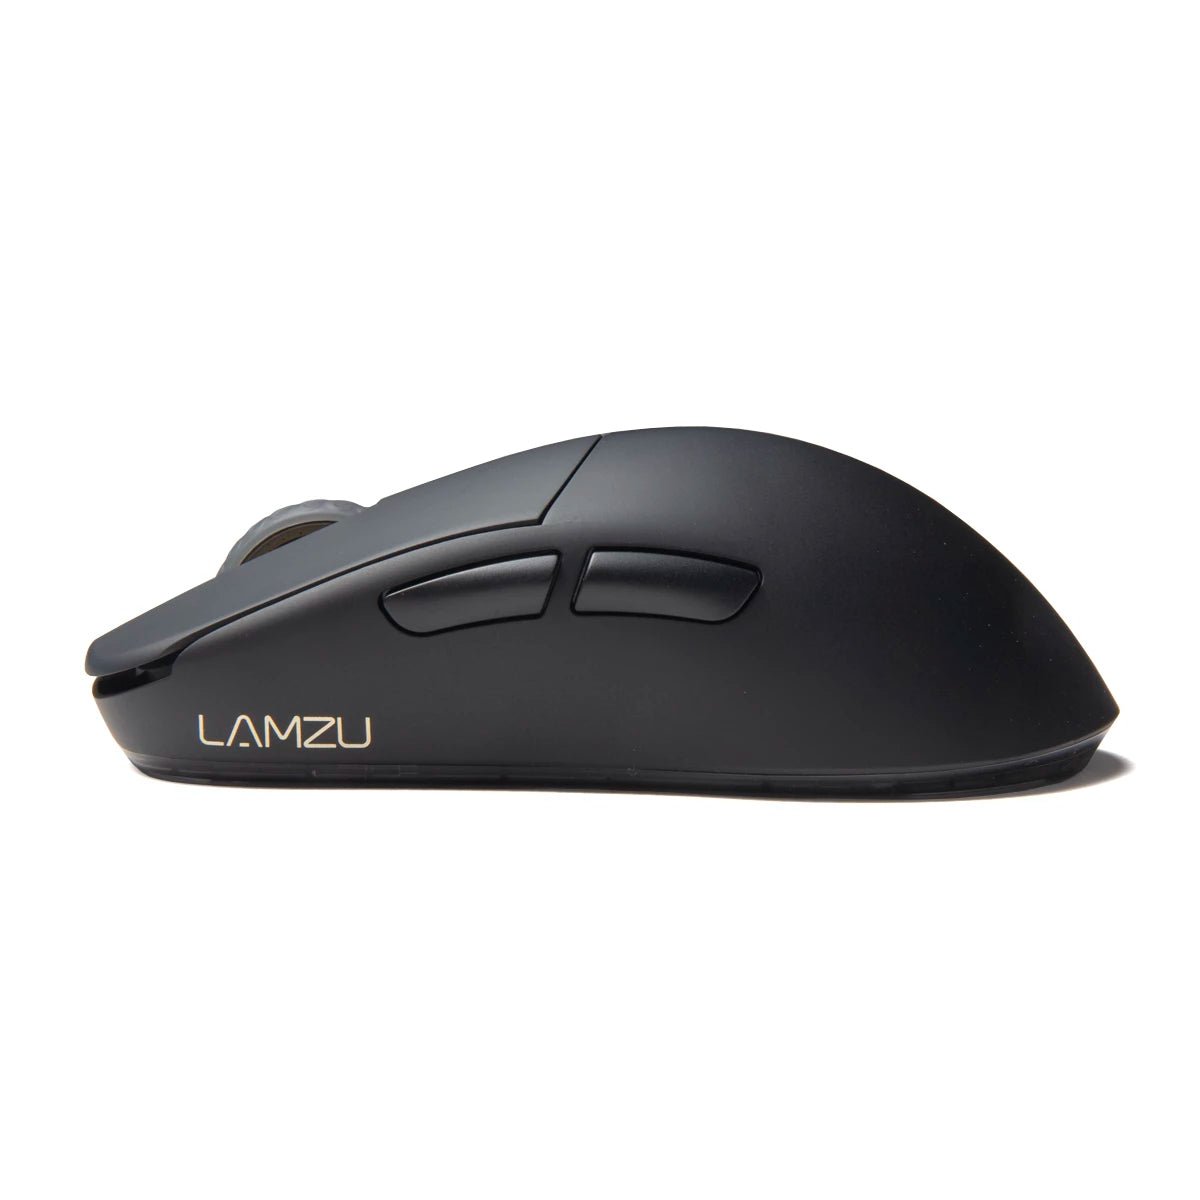 Lamzu Atlantis Mini 4K Superlight Gaming Mouse – Divinikey